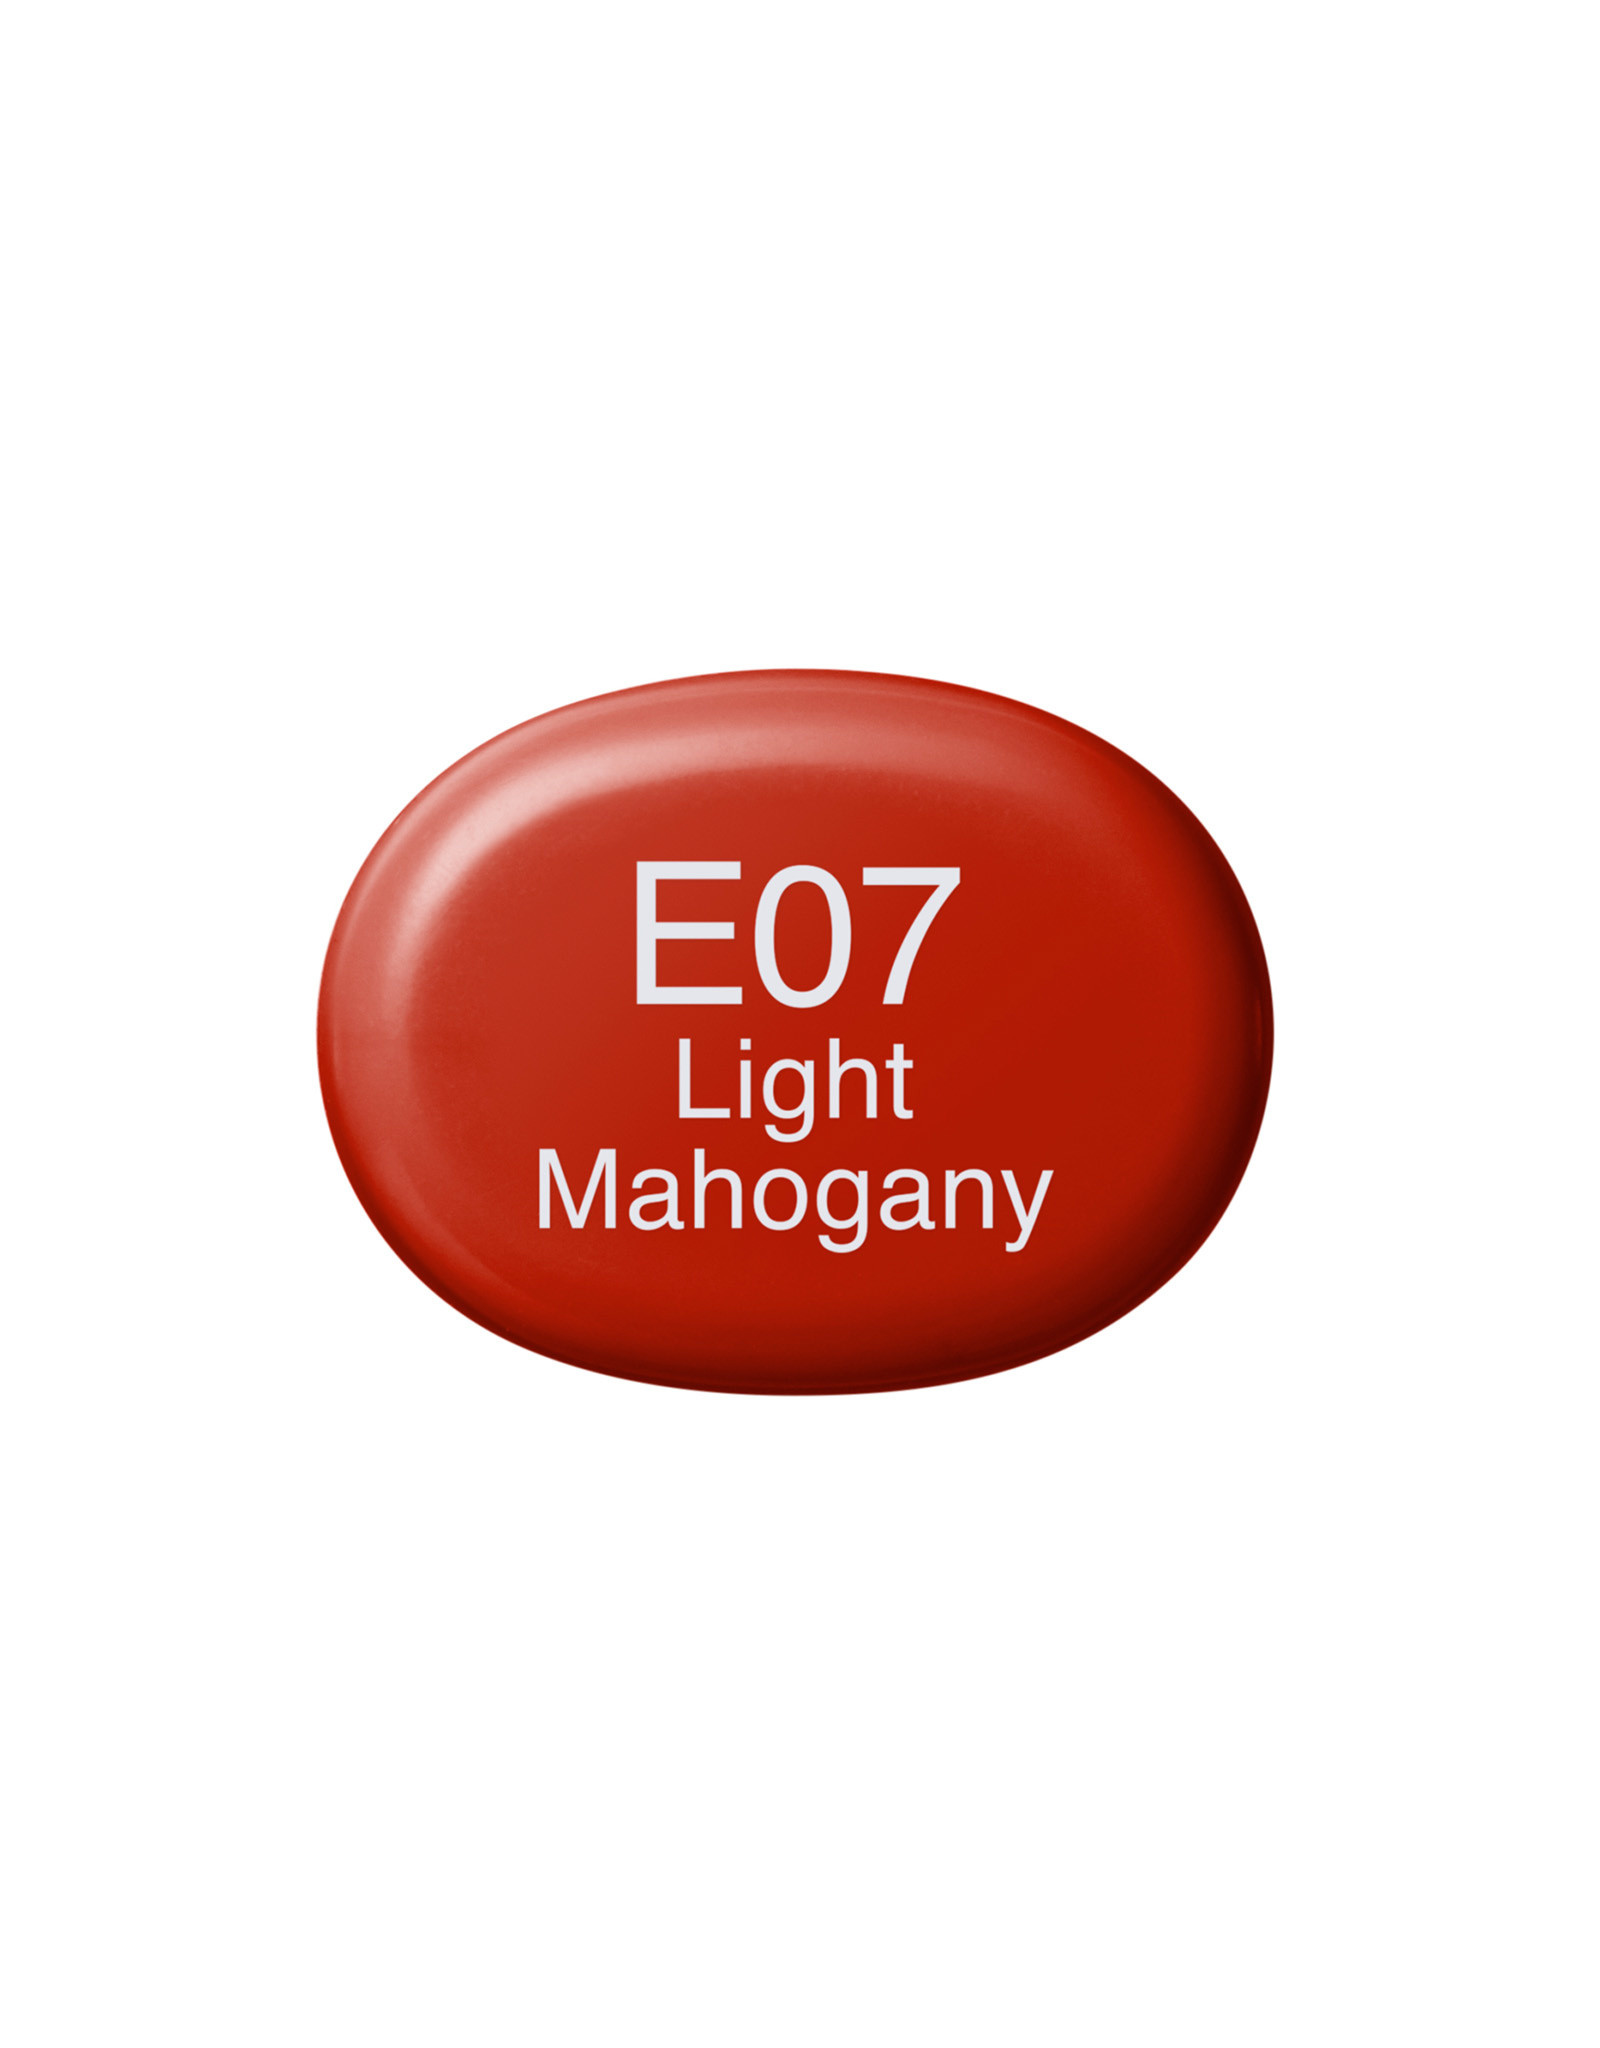 COPIC COPIC Sketch Marker E07 Light Mahogany